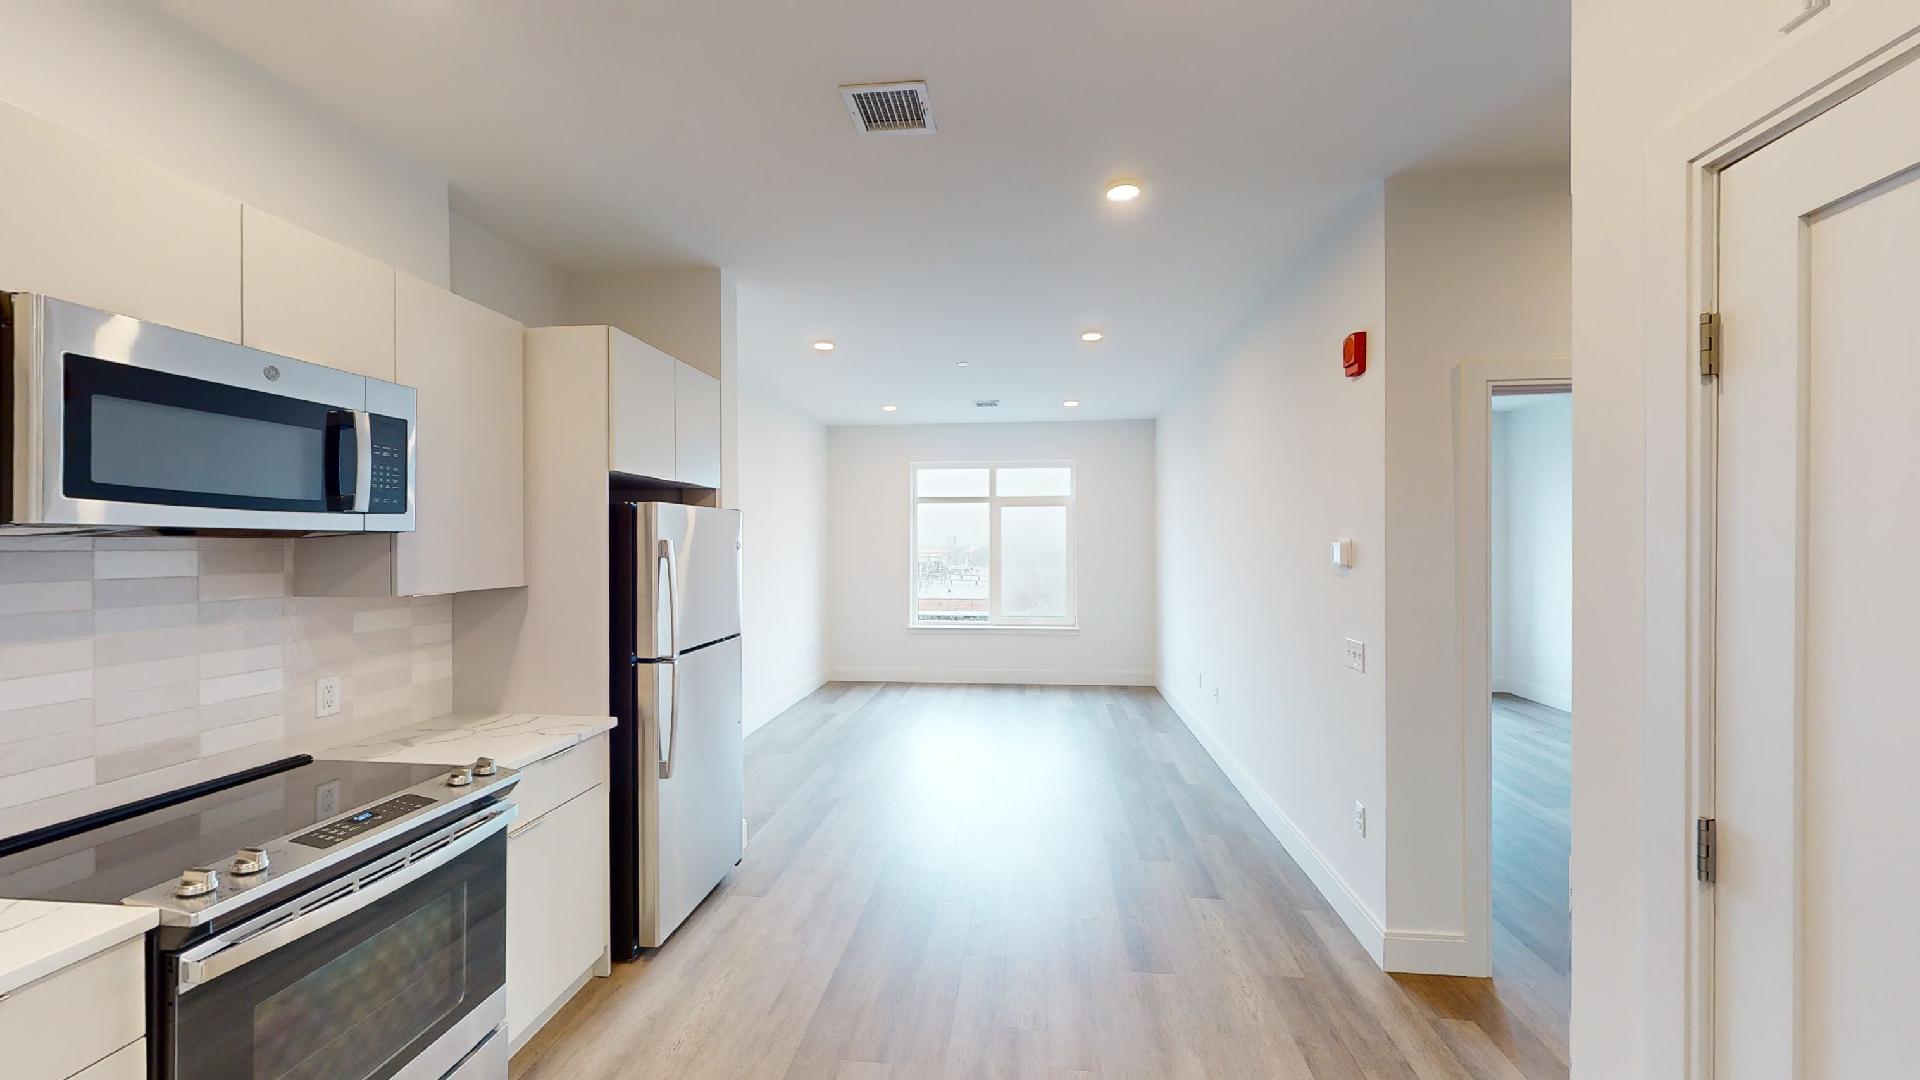 Photos of apartment on Linda Ln.,Boston MA 02125